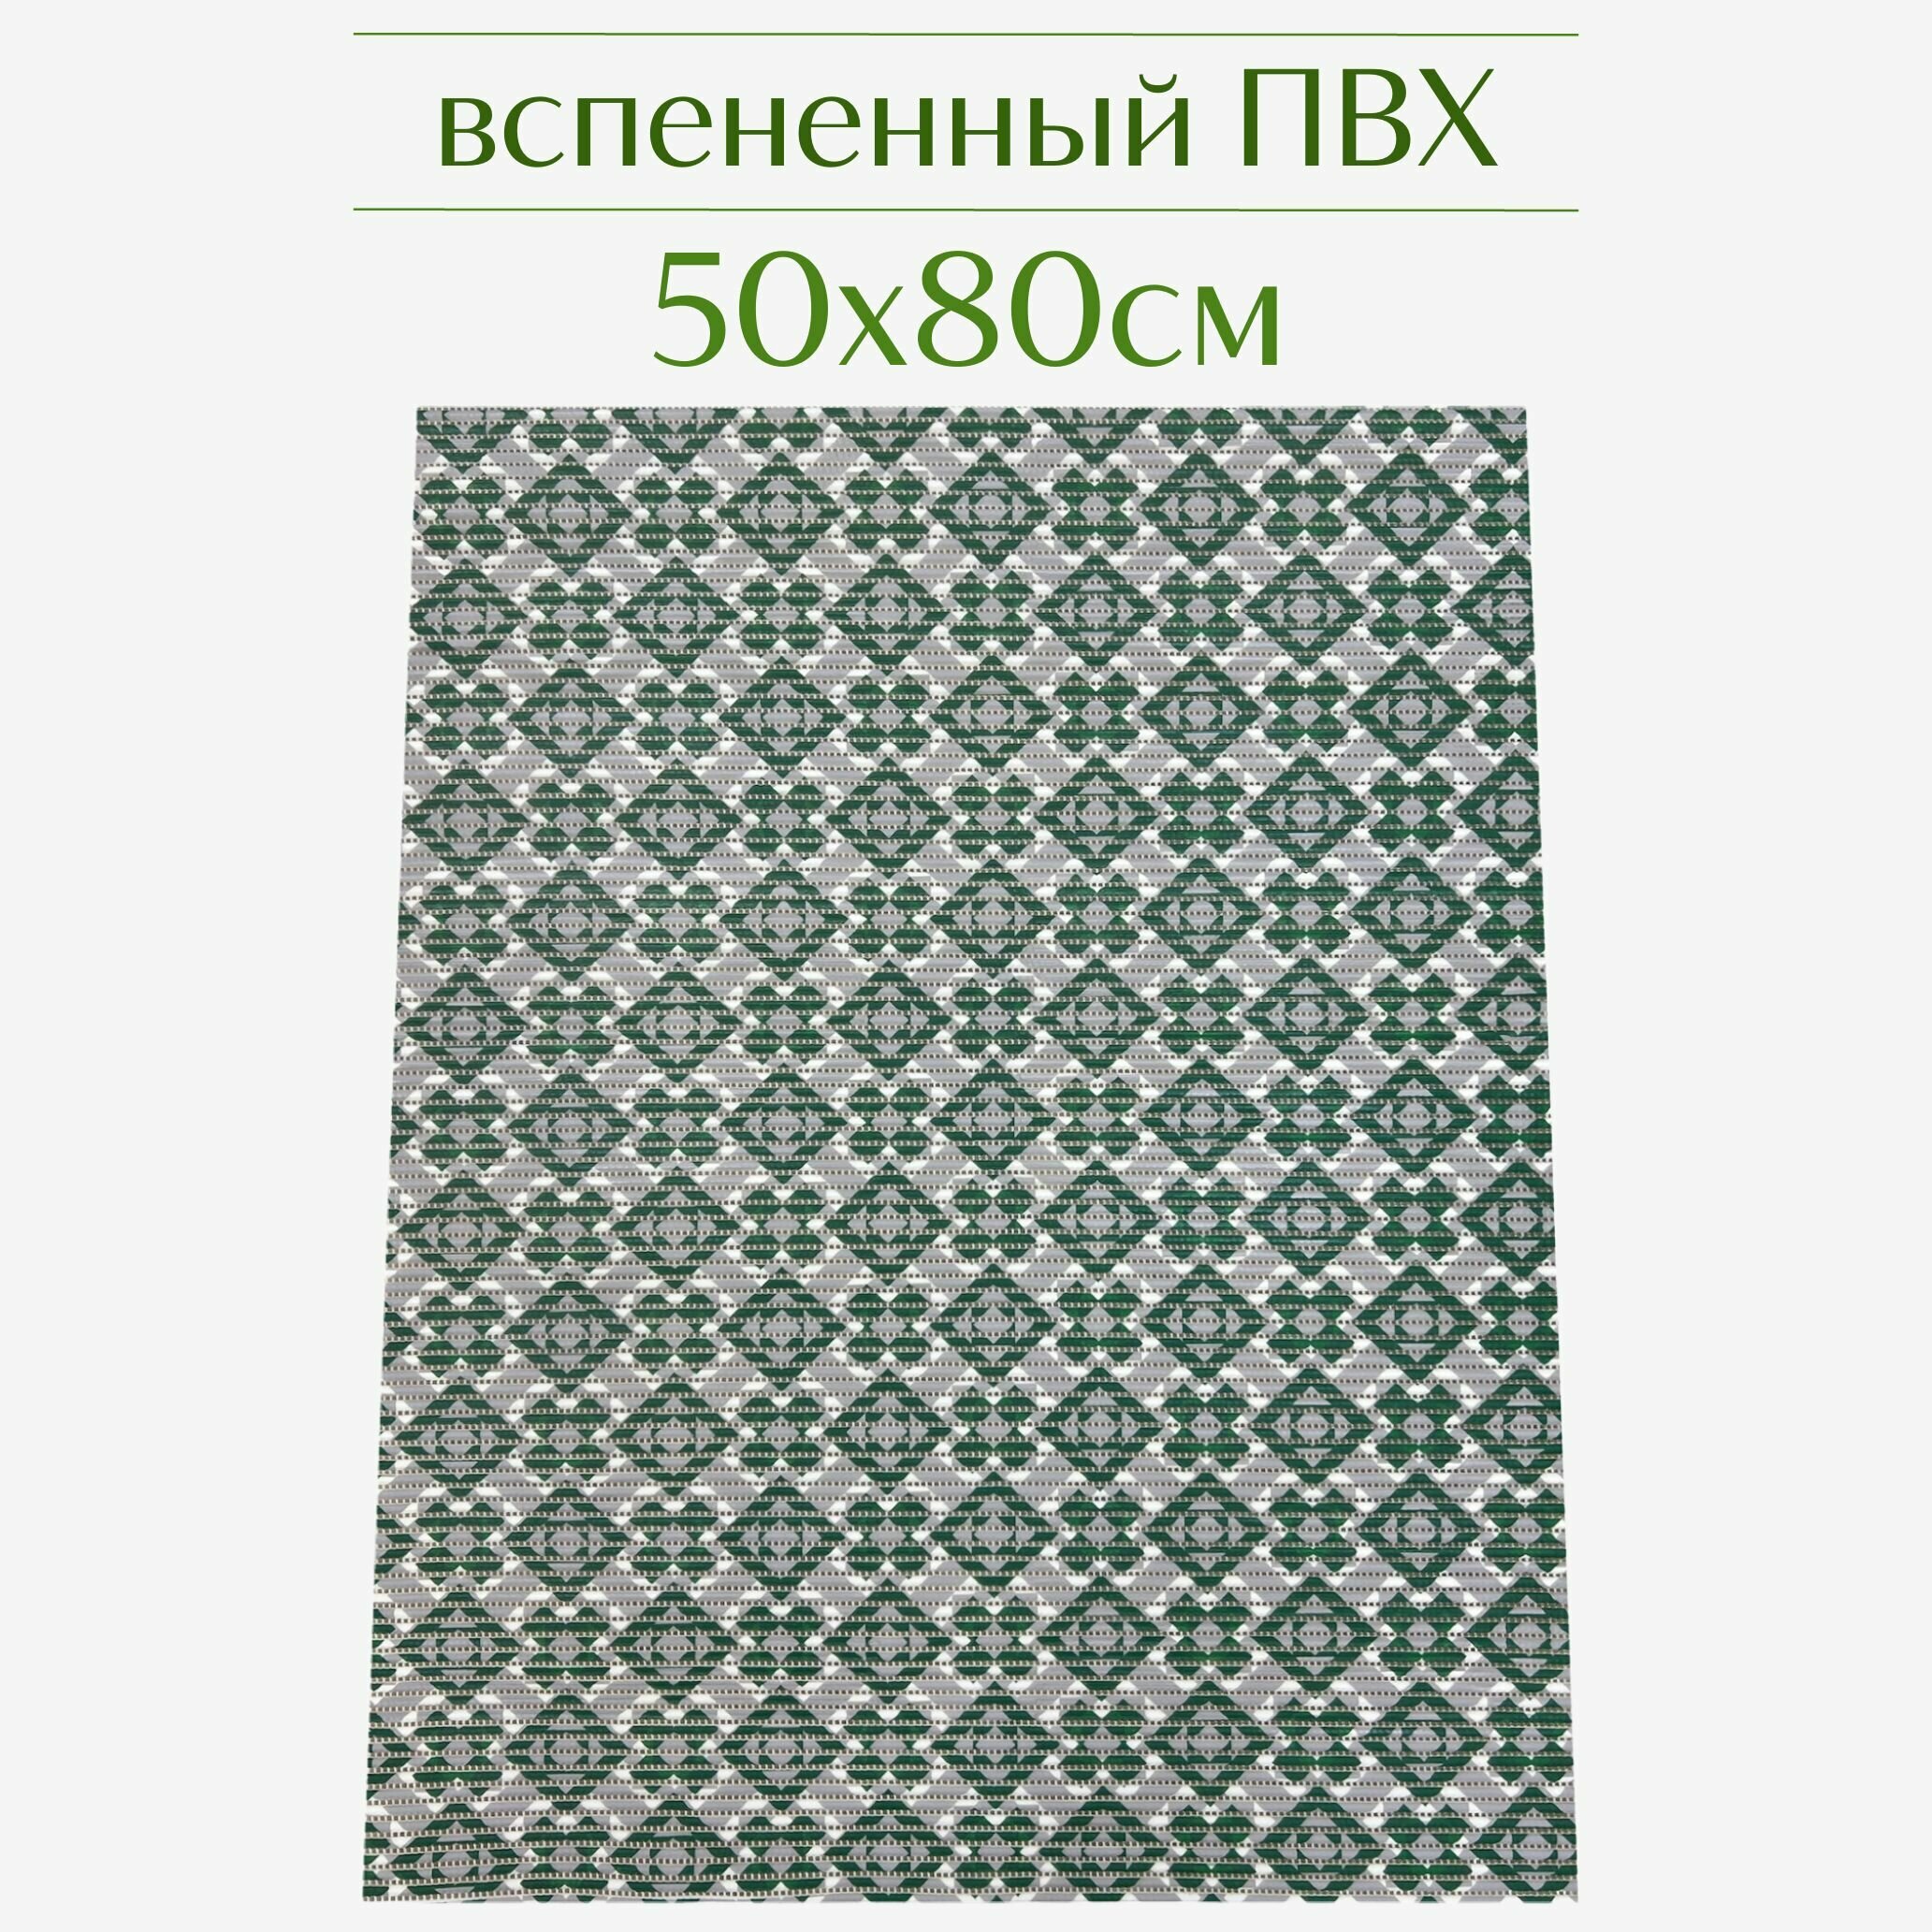 Напольный коврик для ванной из вспененного ПВХ 50x80 см тёмно-зеленый/серый с рисунком